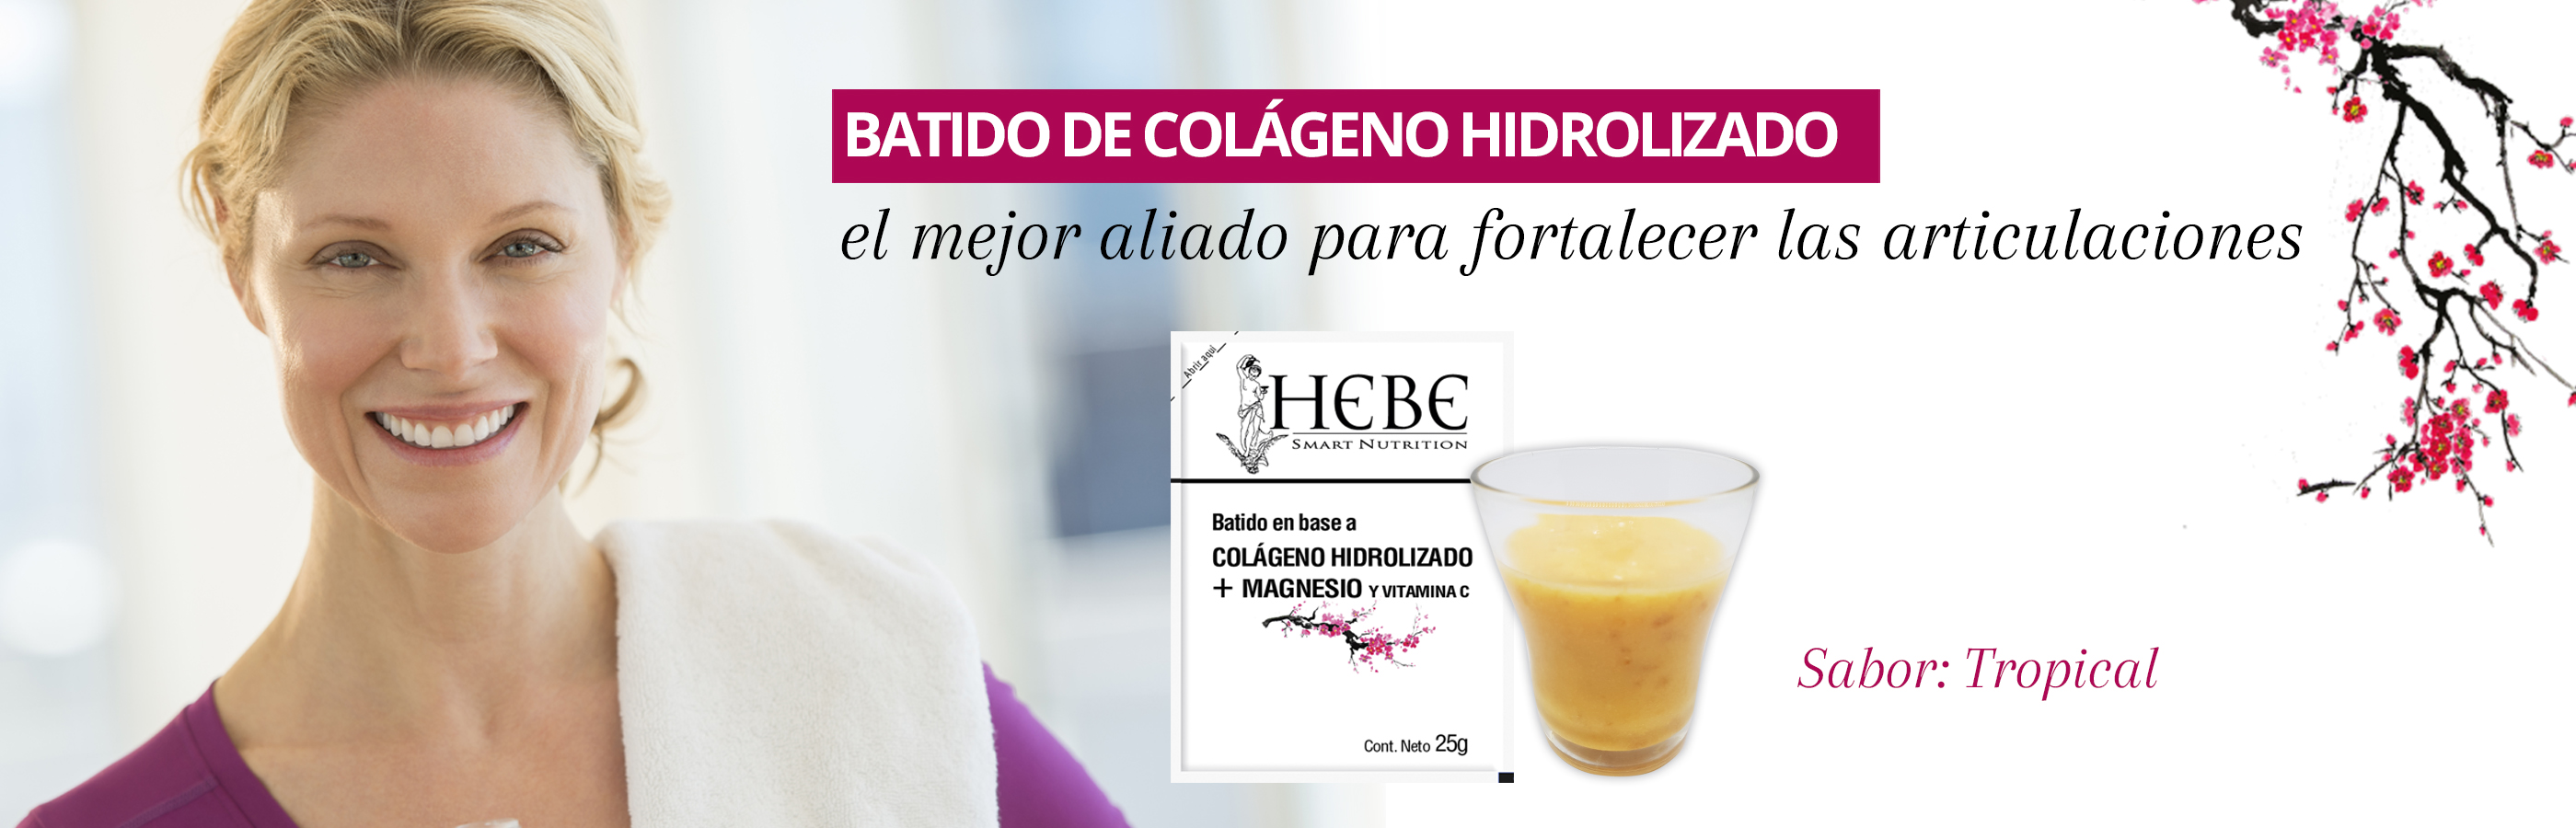 hebe-colageno-hidrolizado-cuida-los-huesos-y-las-articulaciones mujeres adultas degustar